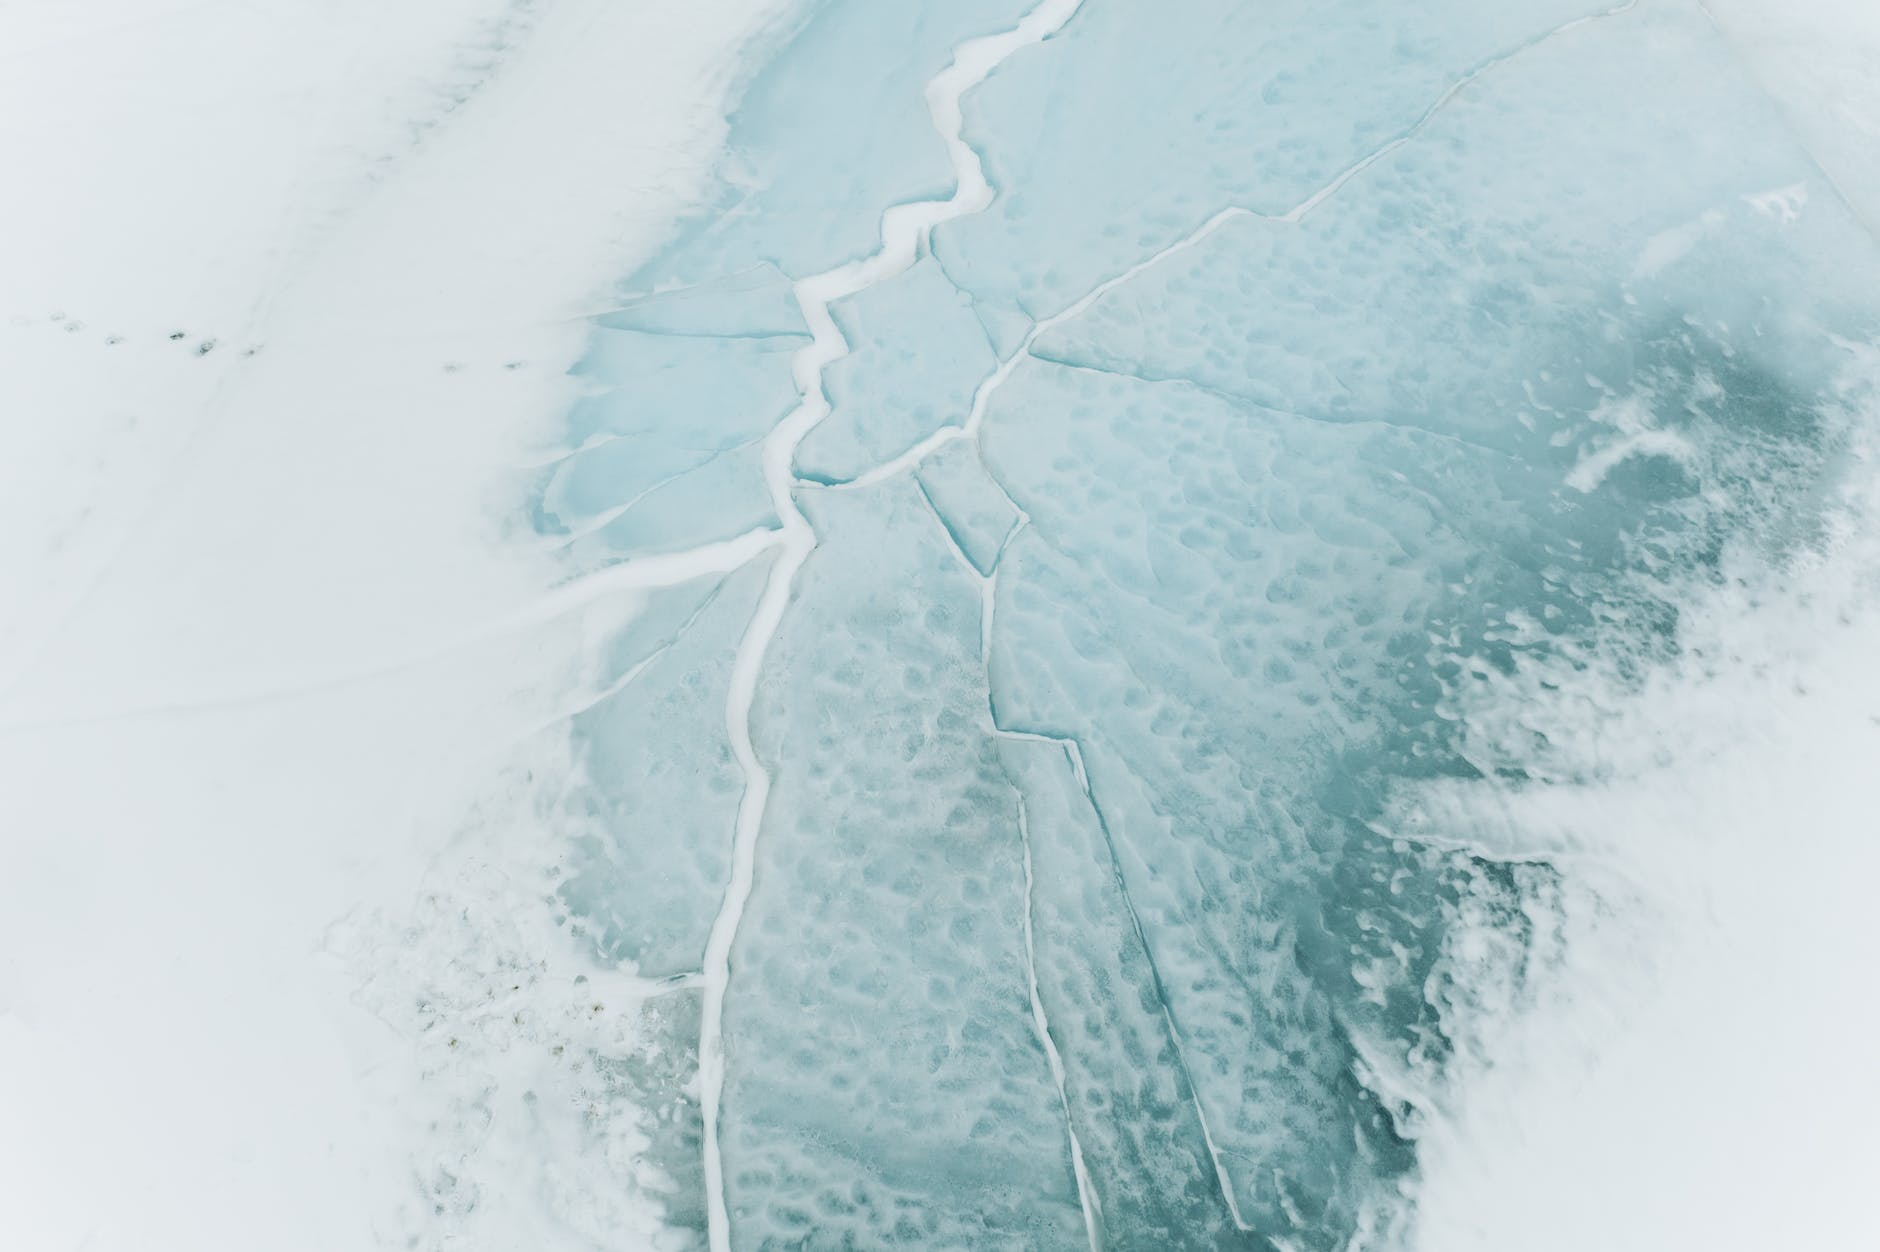 La glace a commencé à craquer. | Source : Pexels